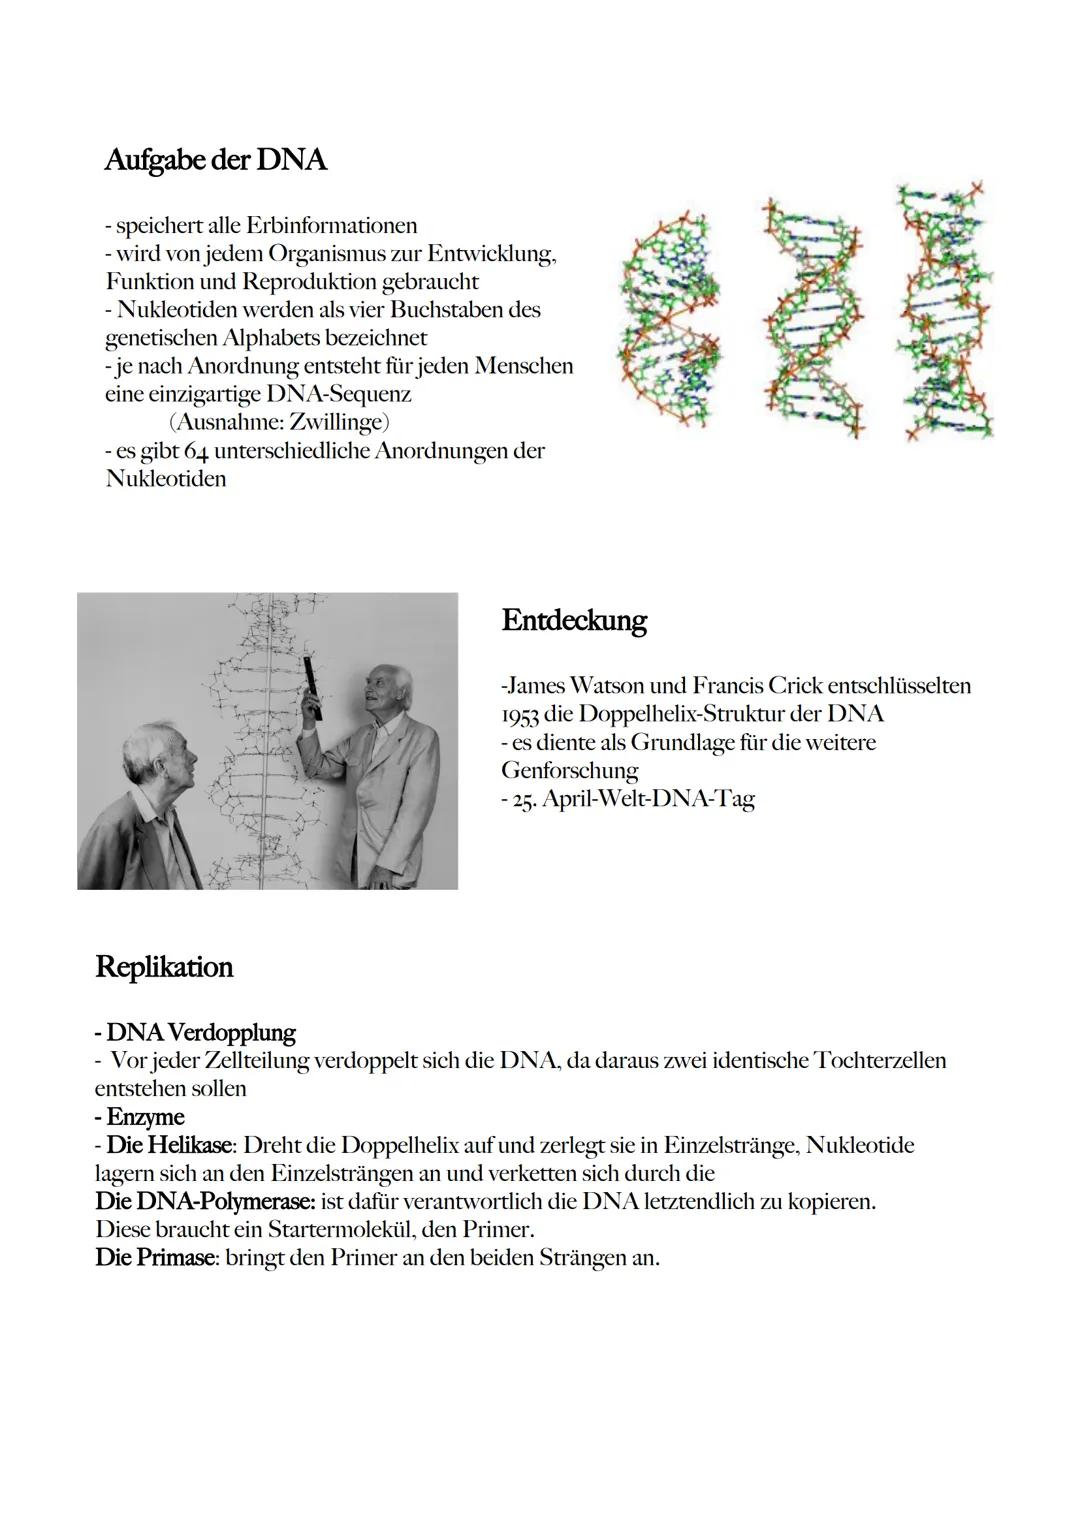 5' Ende
Aufbau der DNA
- Aussehen einer gedrehten Leiter (Doppelhelix)
- erhöht die Stabilität
- Aus Nukleotiden aufgebaut, die sich zu eine